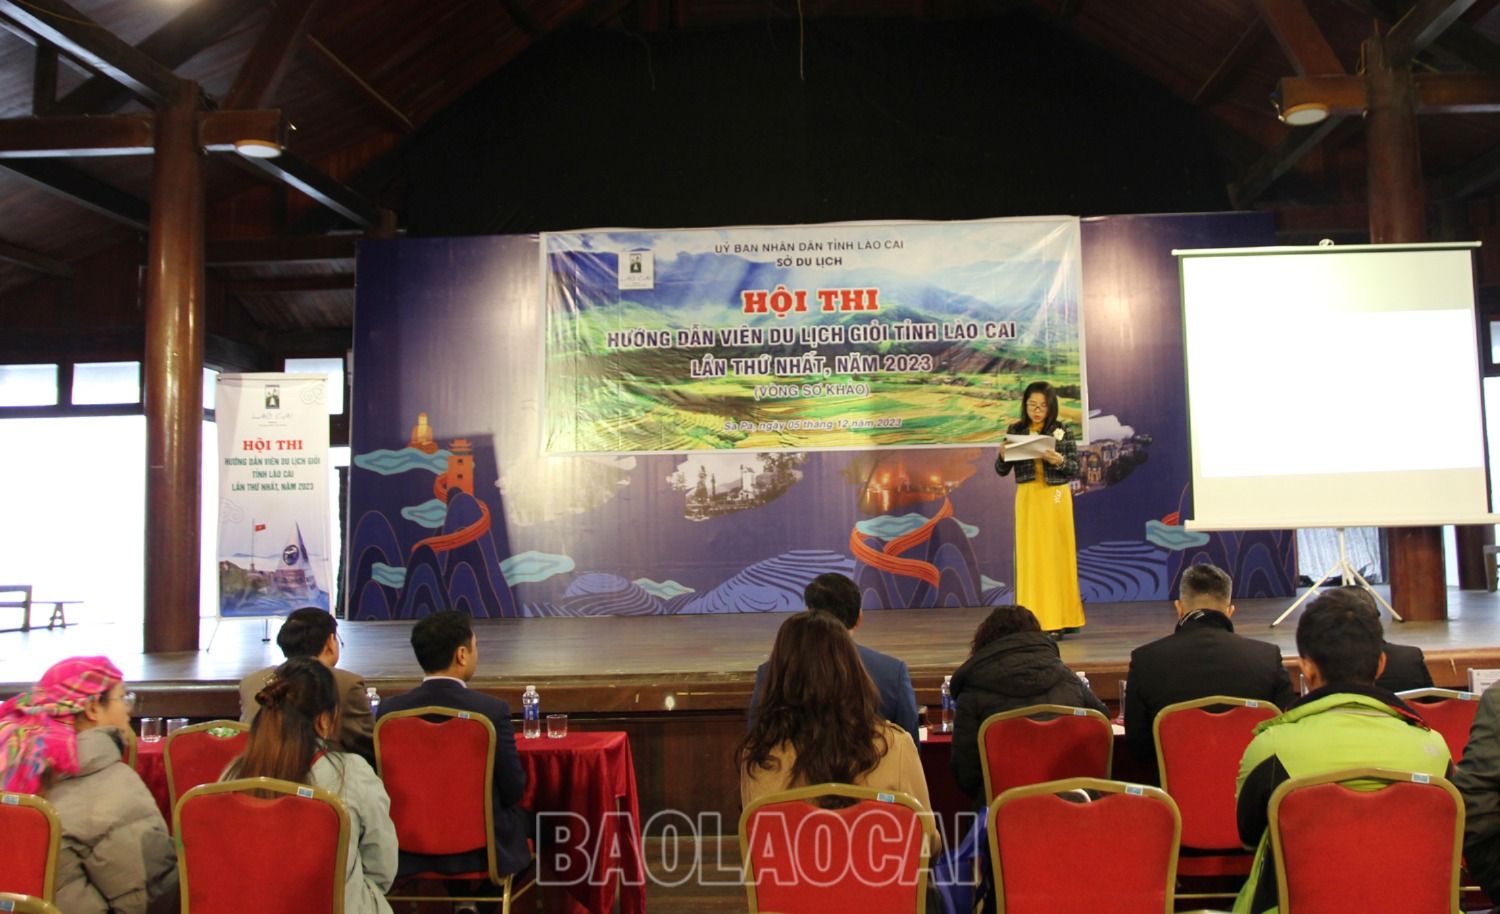 15 thí sinh hoàn thành phần sơ khảo Hội thi Hướng dẫn viên du lịch giỏi tỉnh Lào Cai - Ảnh 1.